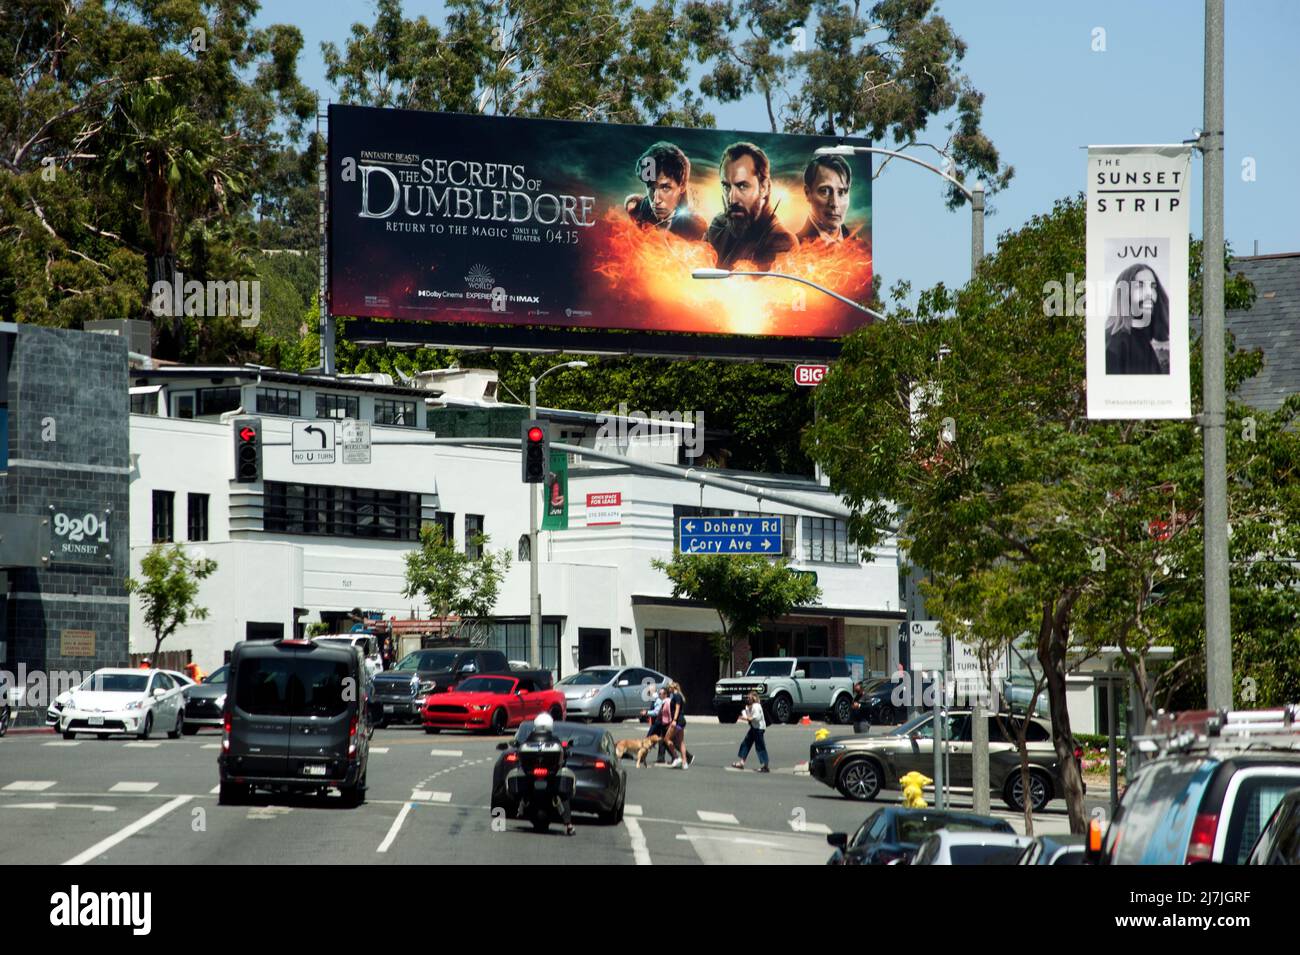 Billboard en Sunset Strip Promoviendo los secretos de Dumbledore, Los Angeles, CA Foto de stock